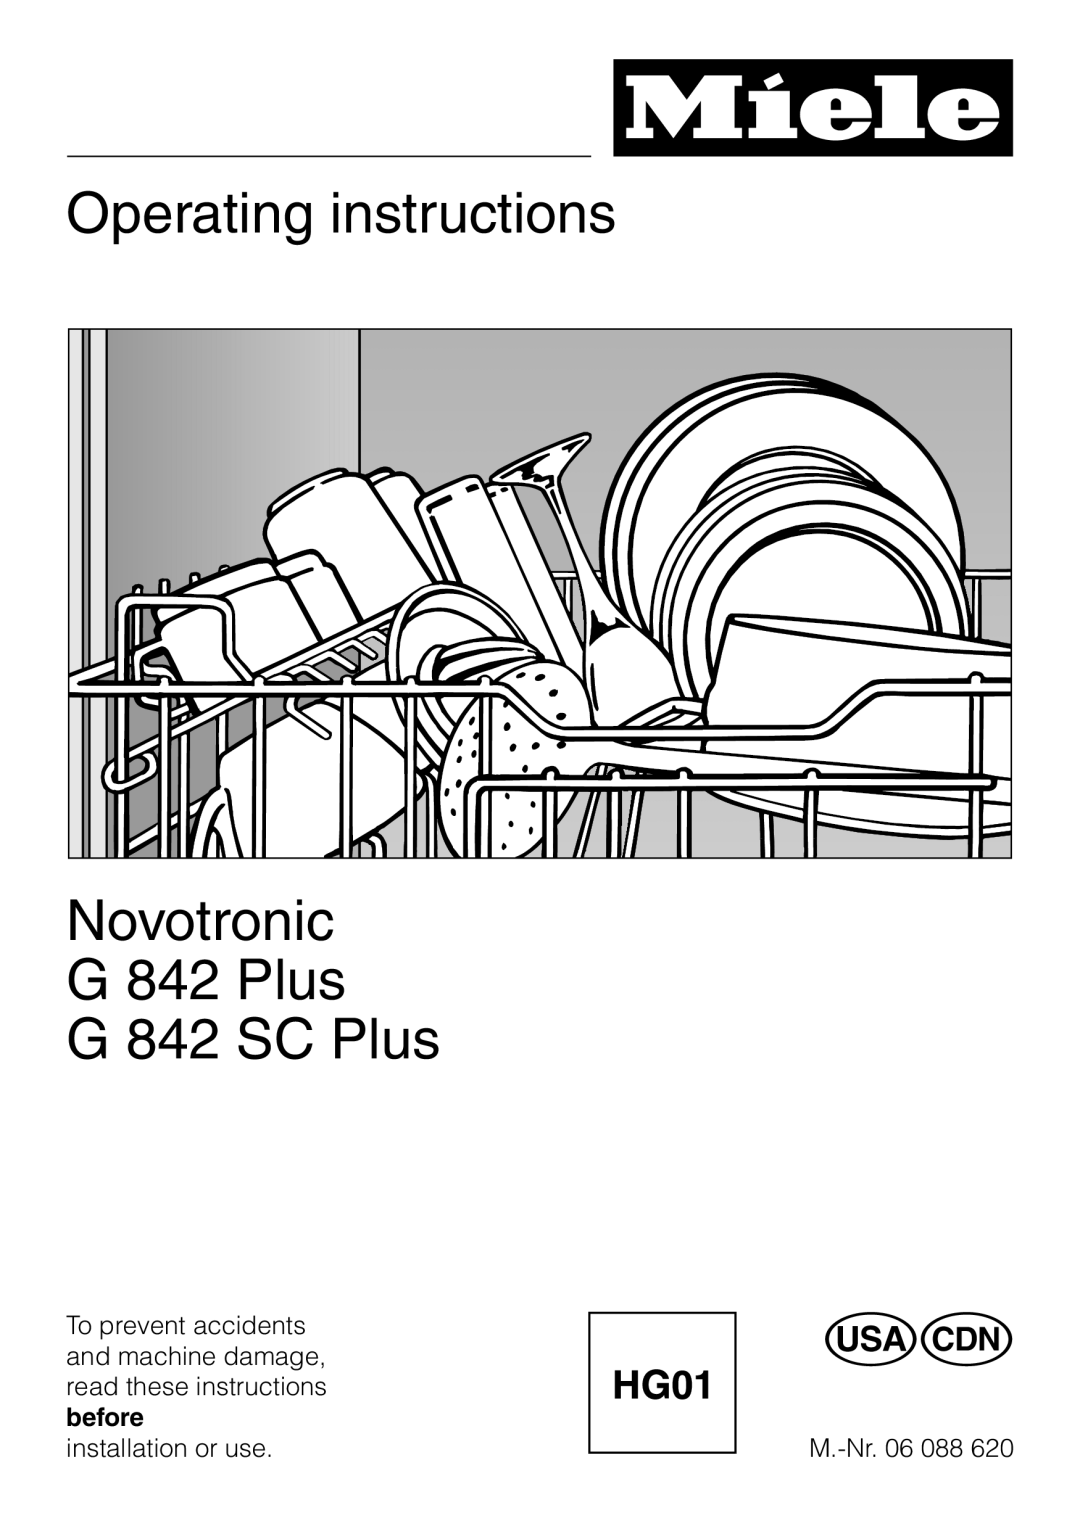 Miele G 842 SC PLUS, G 842 PLUS manual Operating instructions, Novotronic G 842 Plus G 842 SC Plus 